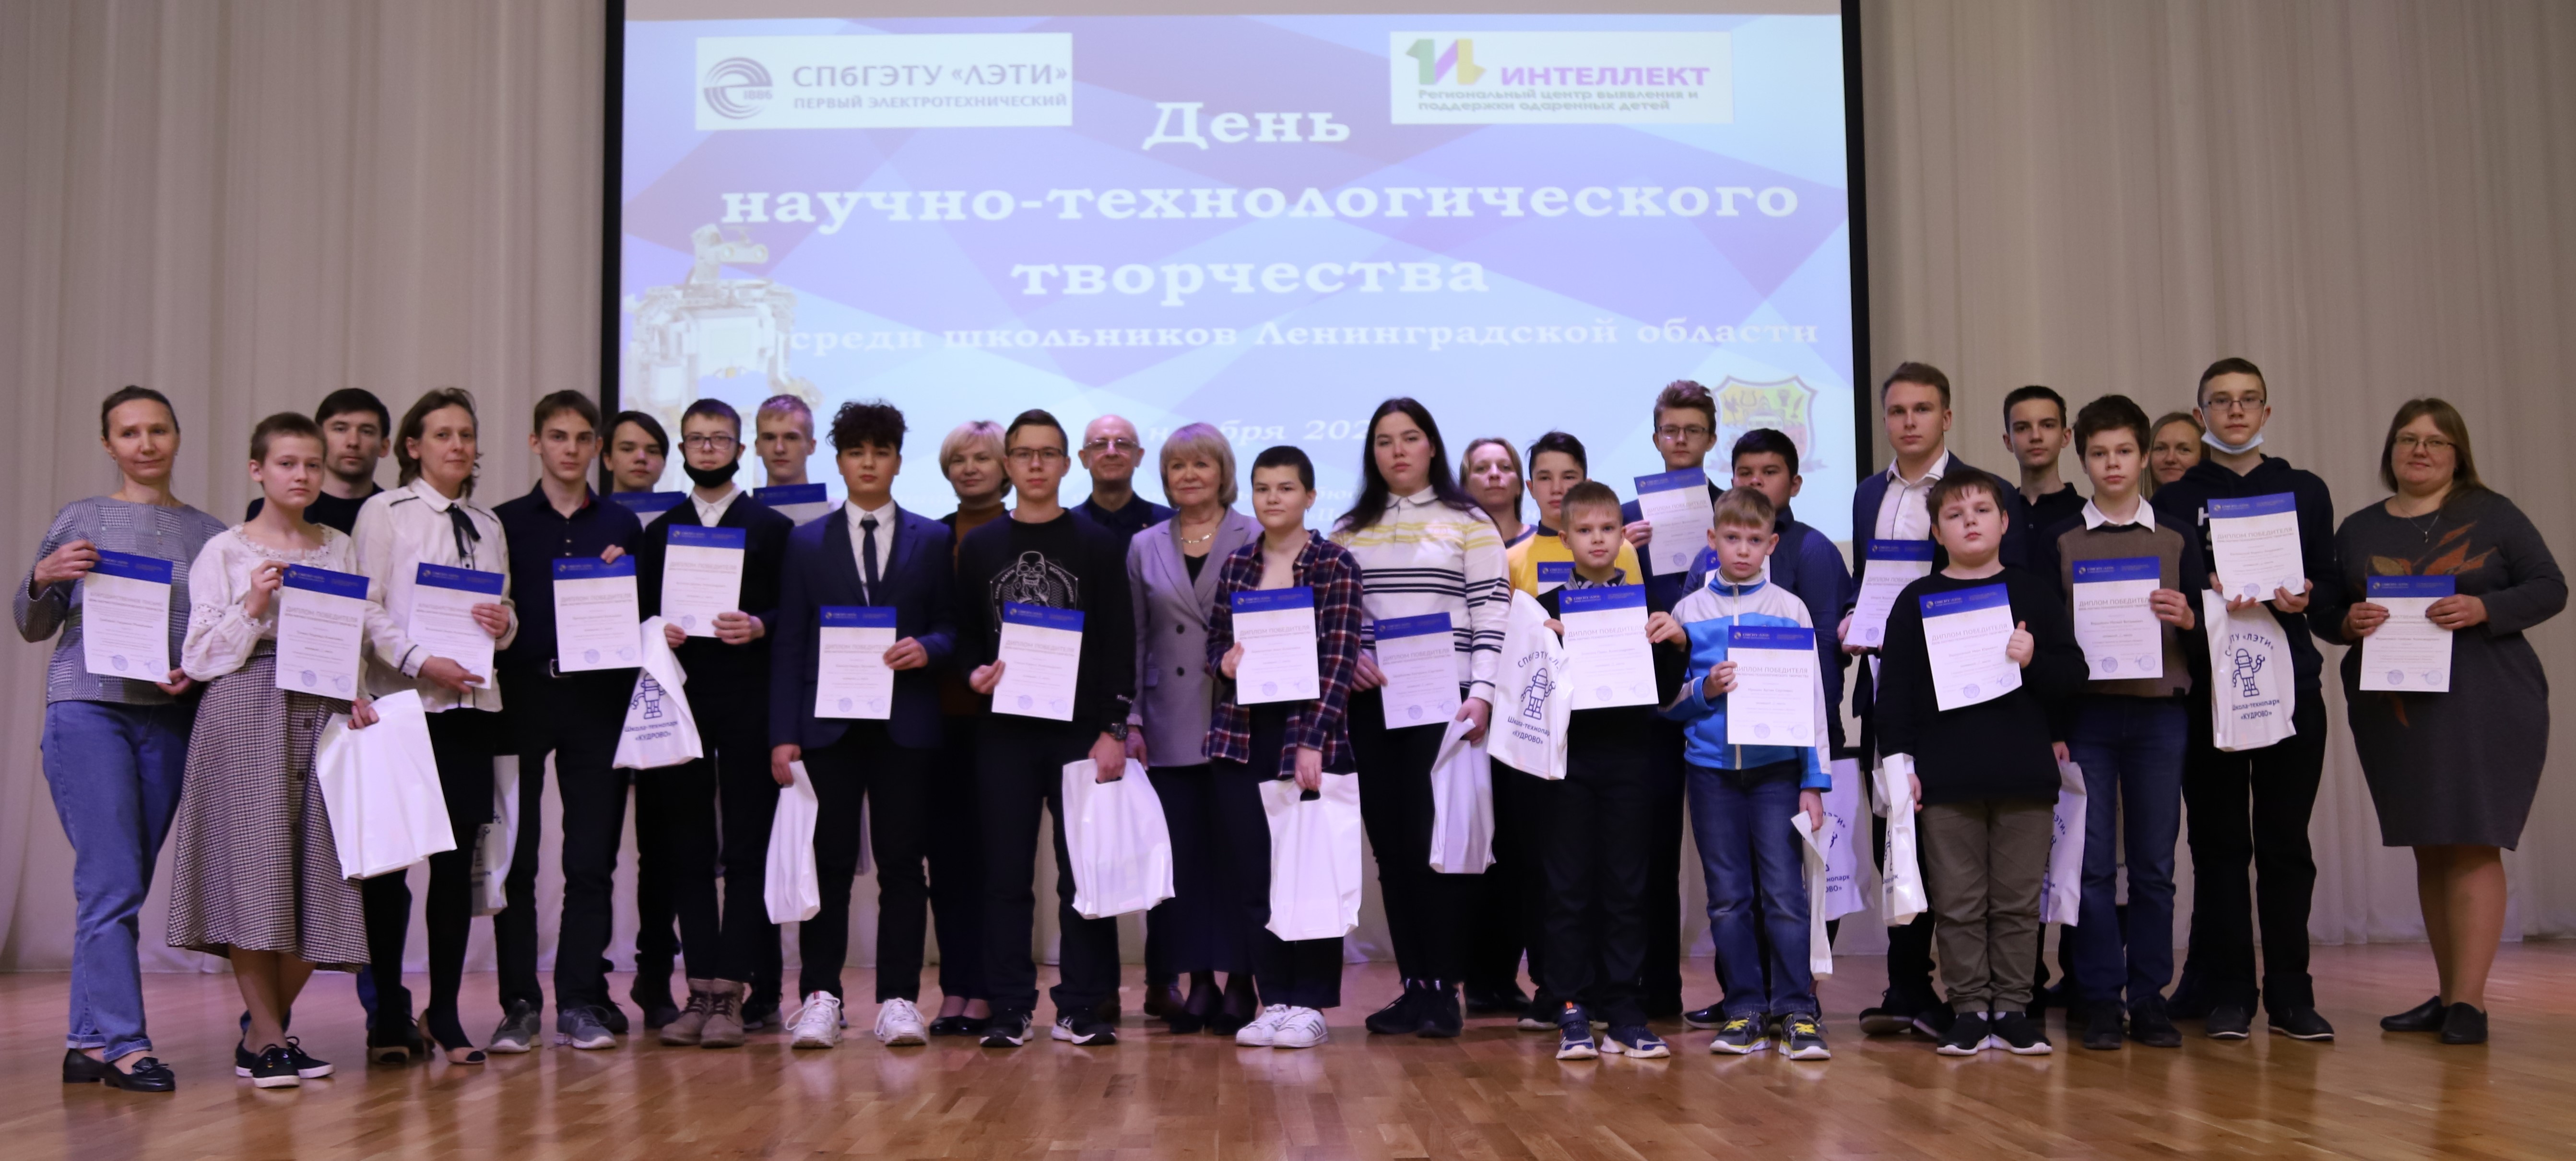 Результаты очного этапа Дня научно-технологического творчества для школьников Ленинградской области